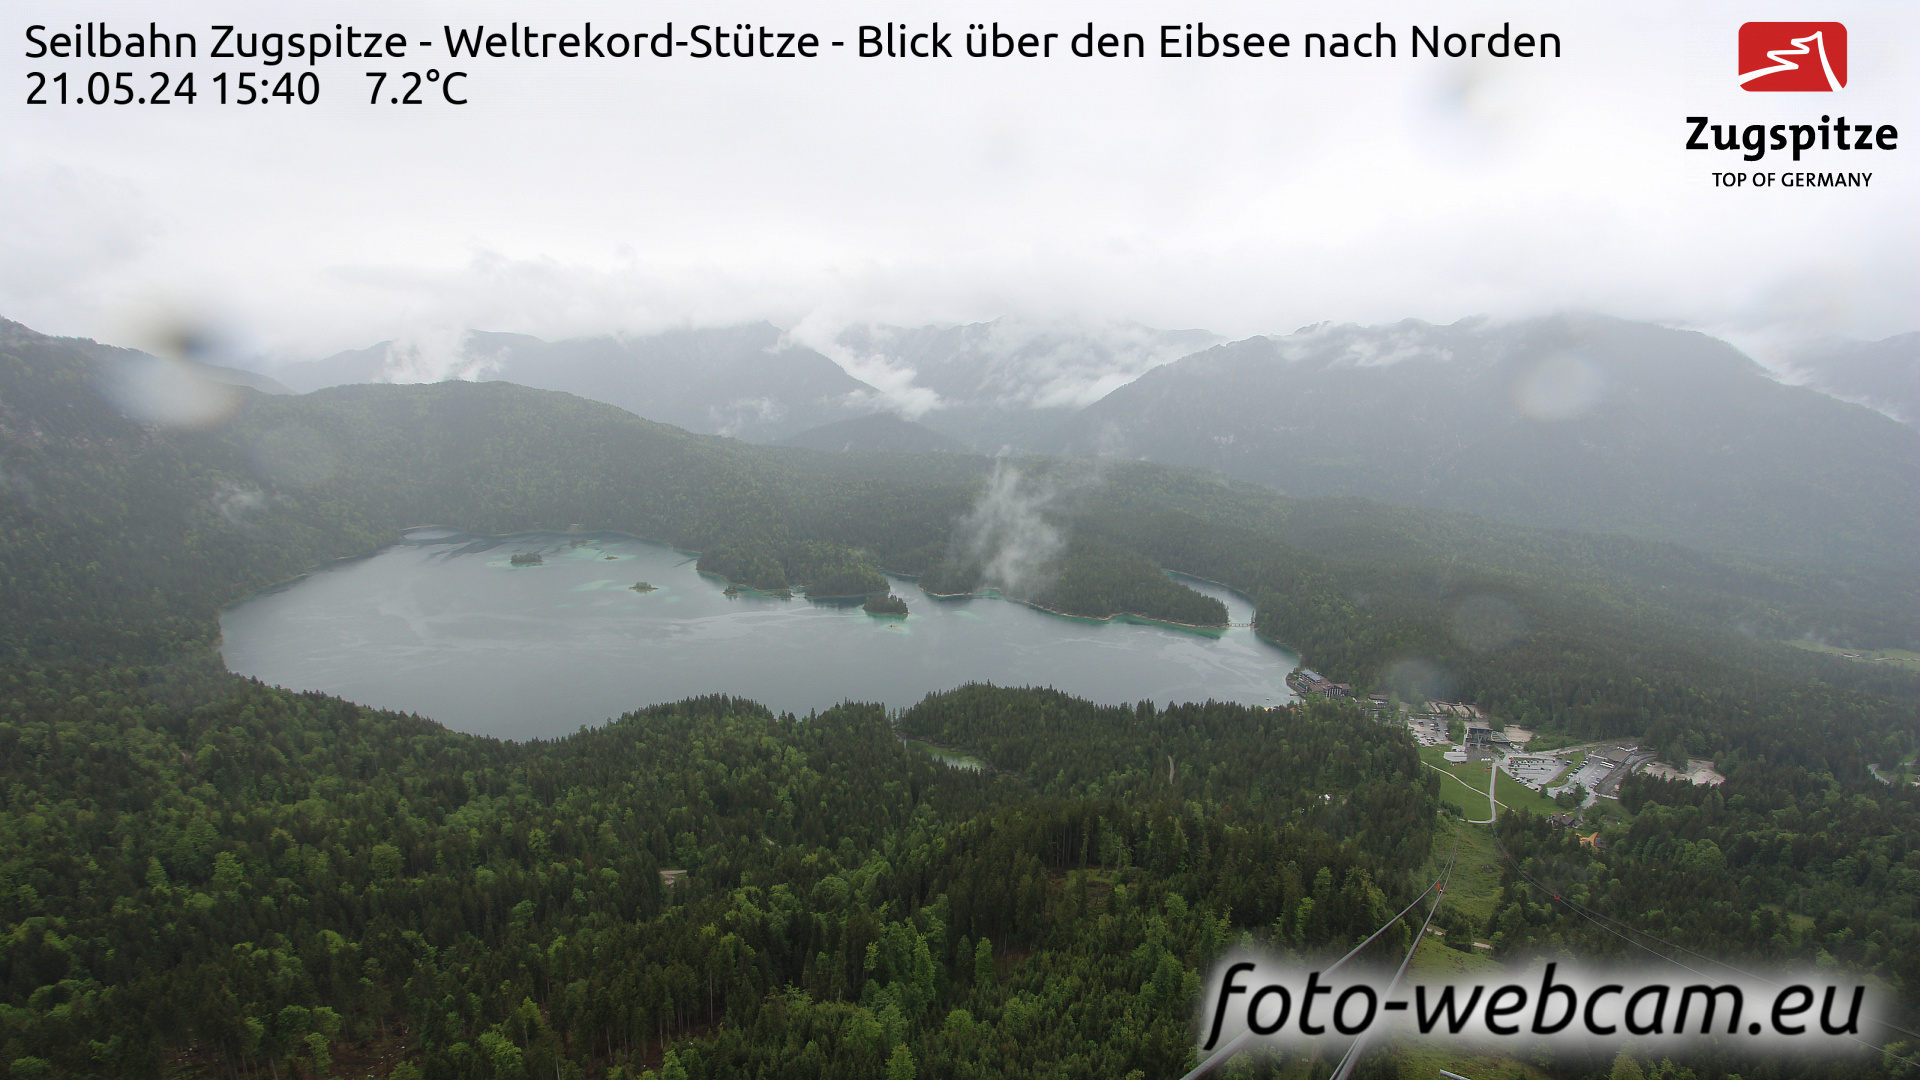 Zugspitze Wed. 15:49